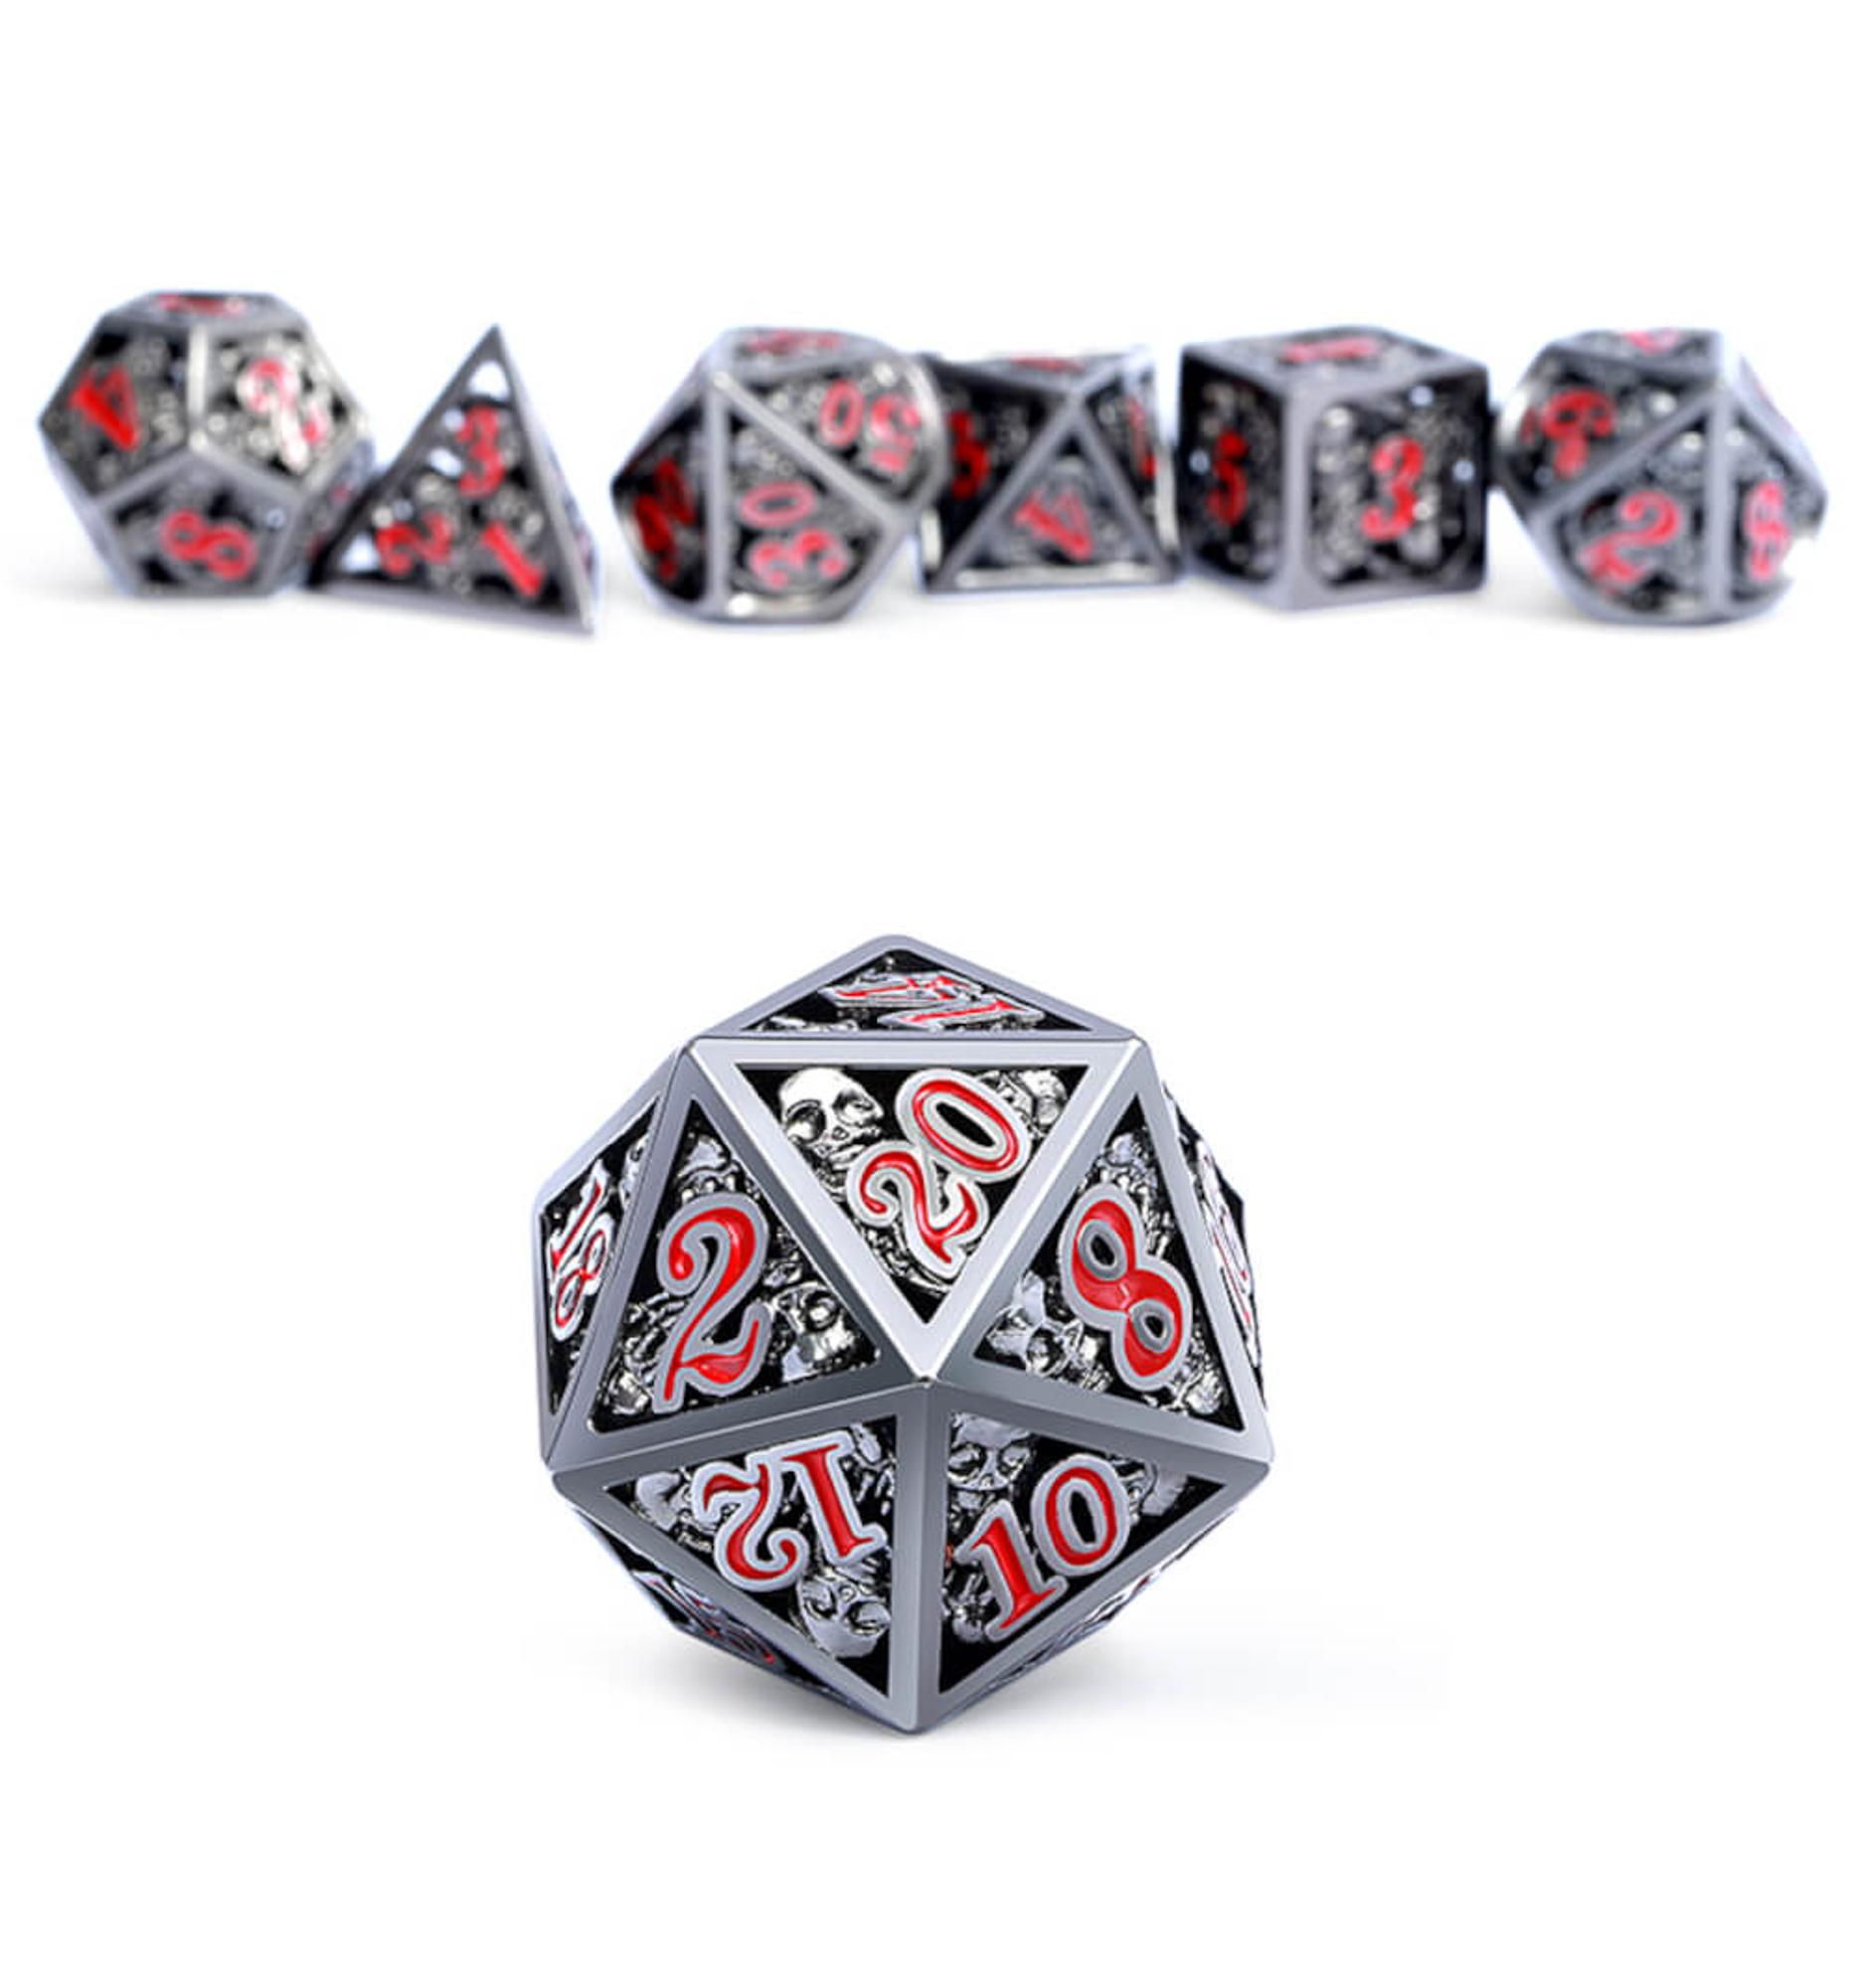 Dice Habit Hollow Polyhedral 7 Die Set - Skull Nickleplate/Red